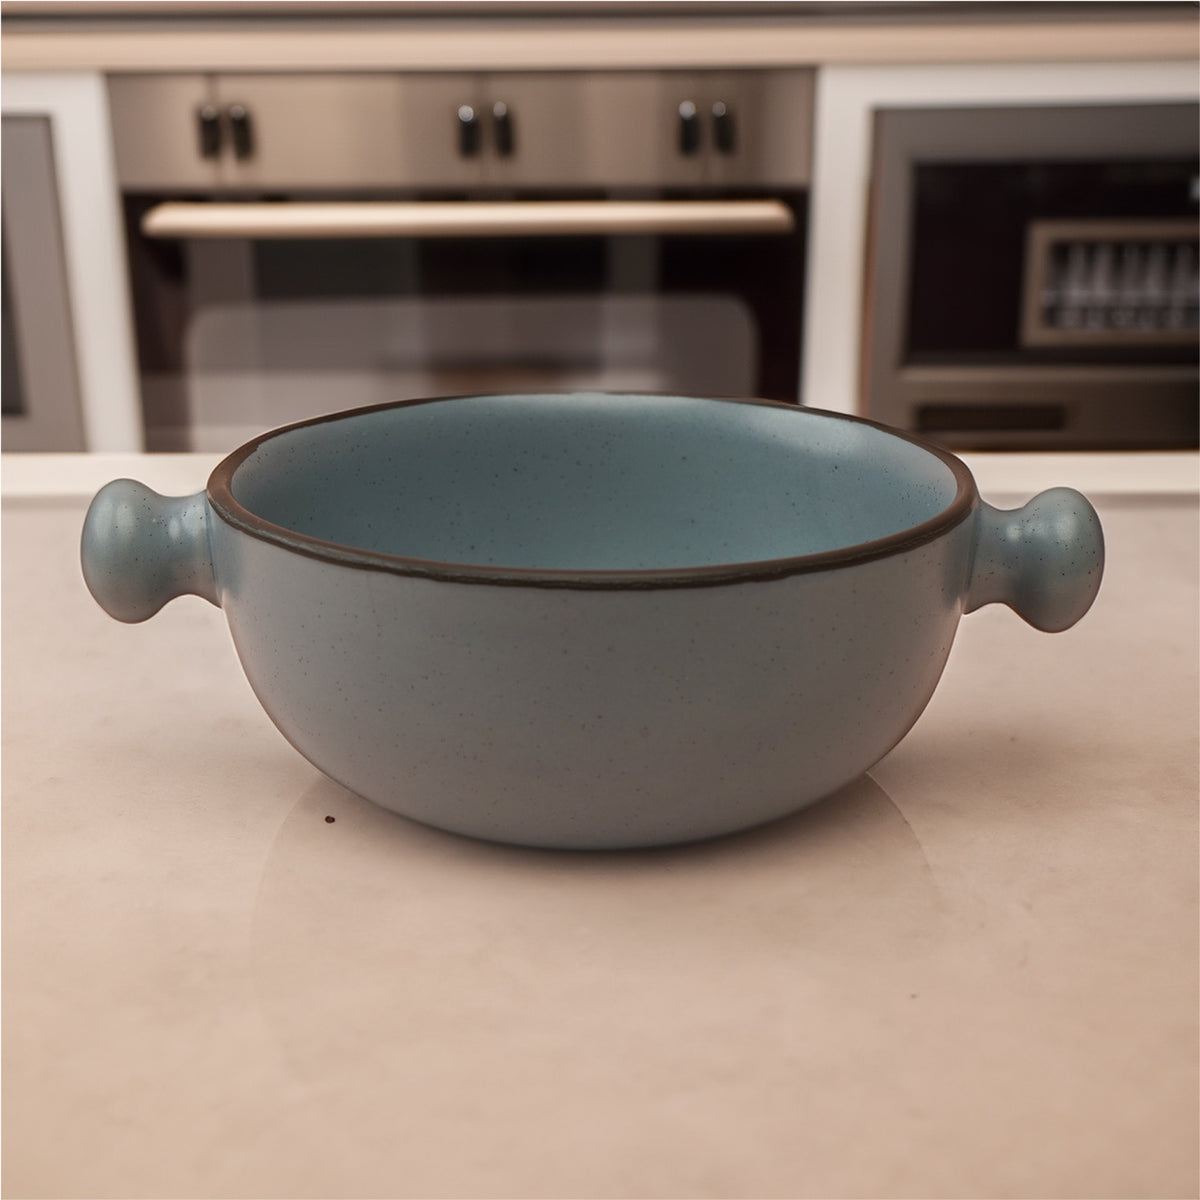 Artisanal Splendor: Handmade Ceramic Bowl with Handles